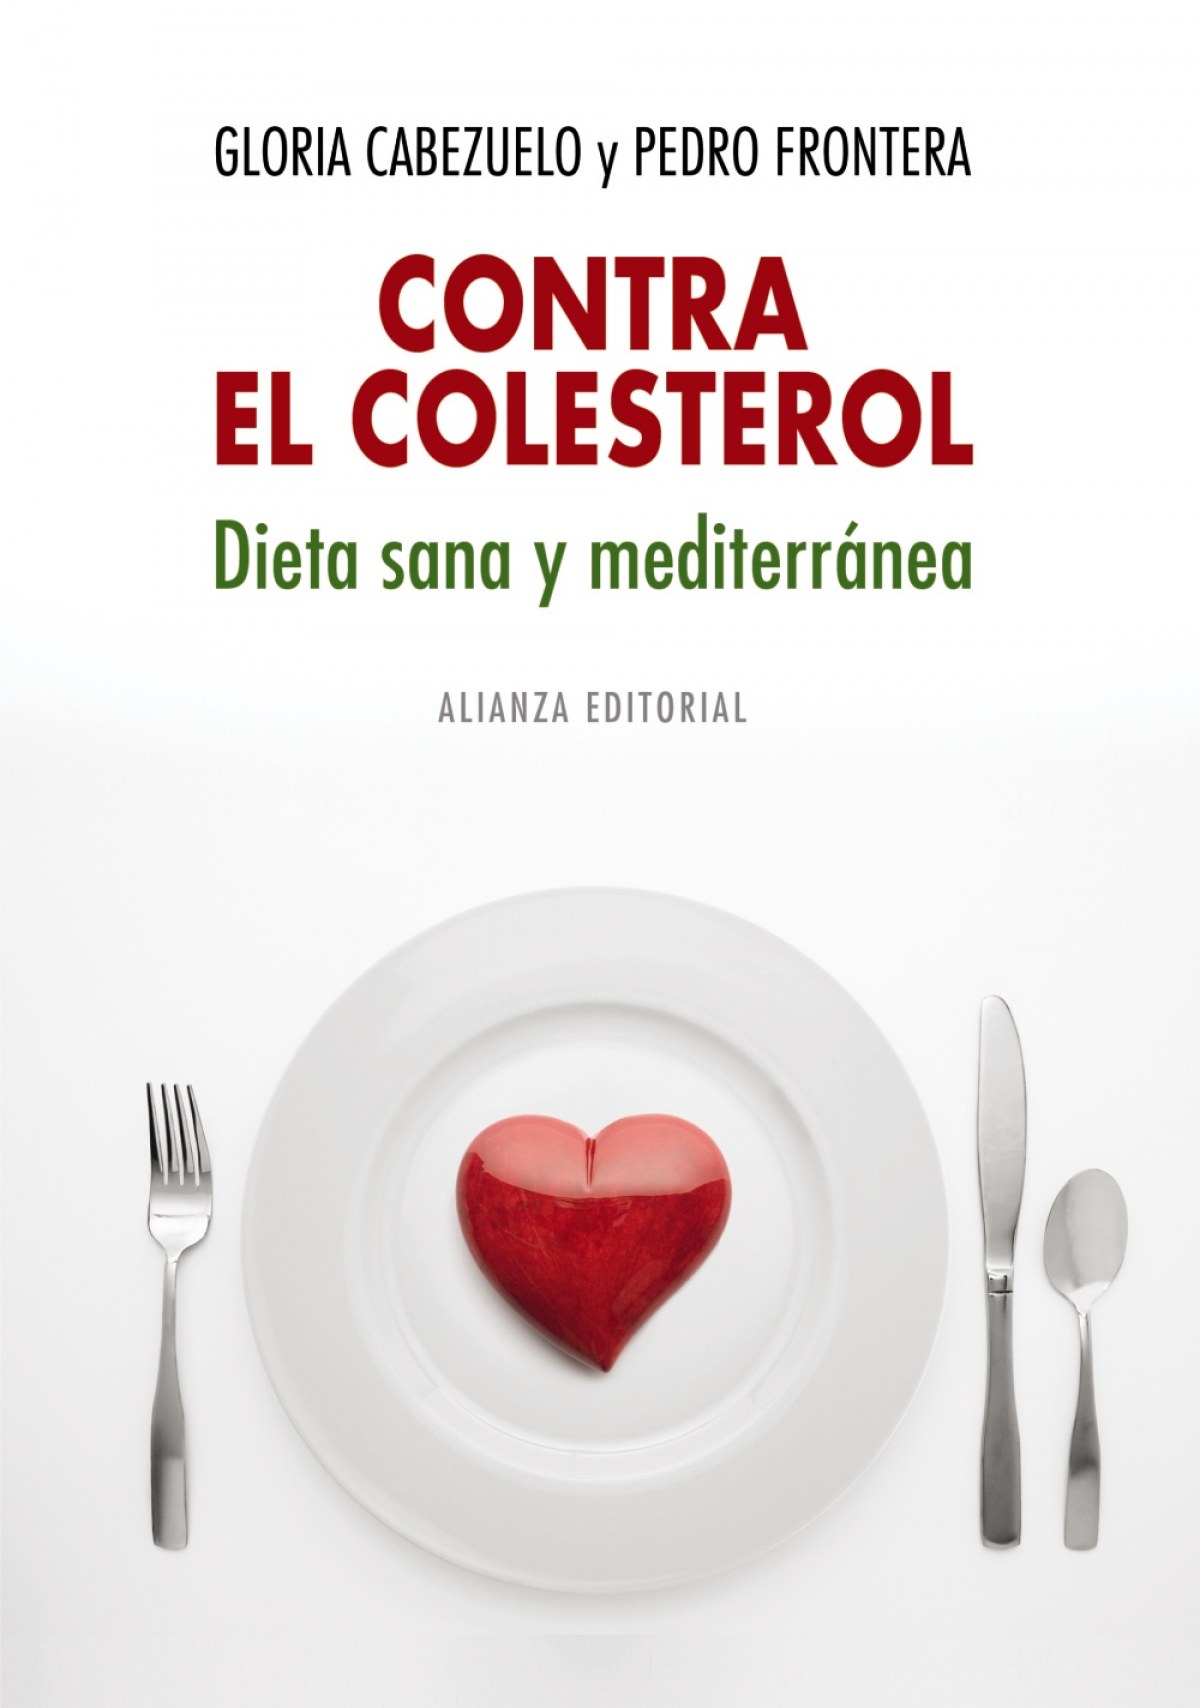 Contra el colesterol: dieta sana y mediterránea - Cabezuelo, Gloria/Frontera, Pedro